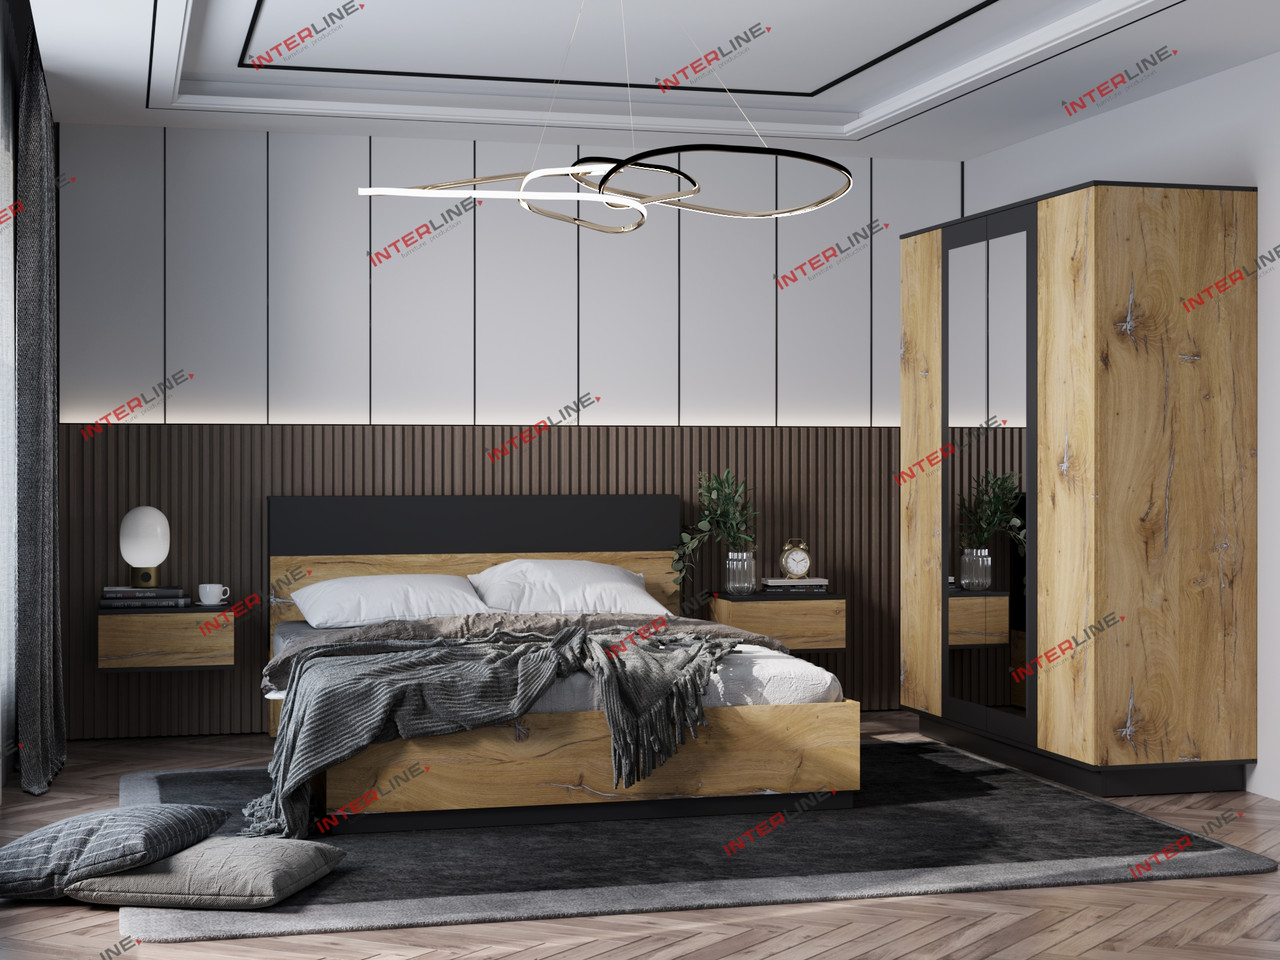 Набор мебели для жилой комнаты Quartz-13 (Спальня-1) фабрика Интерлиния- 2 варианта цвета